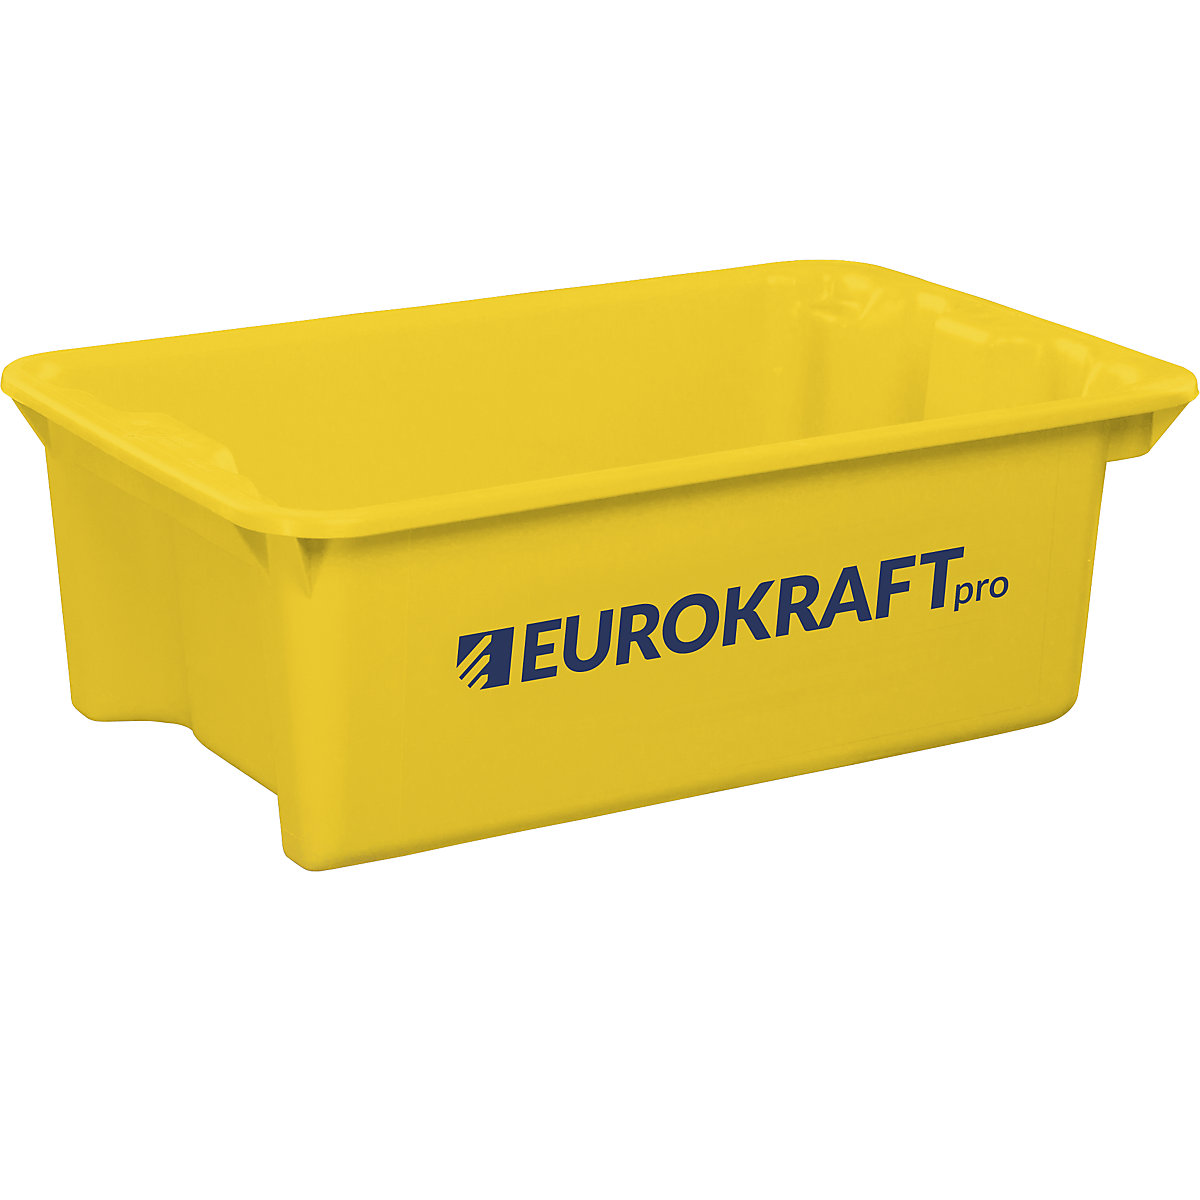 Drehstapelbehälter aus lebensmittelechtem Polypropylen eurokraft pro, Inhalt 34 Liter, VE 3 Stk, Wände und Boden geschlossen, gelb